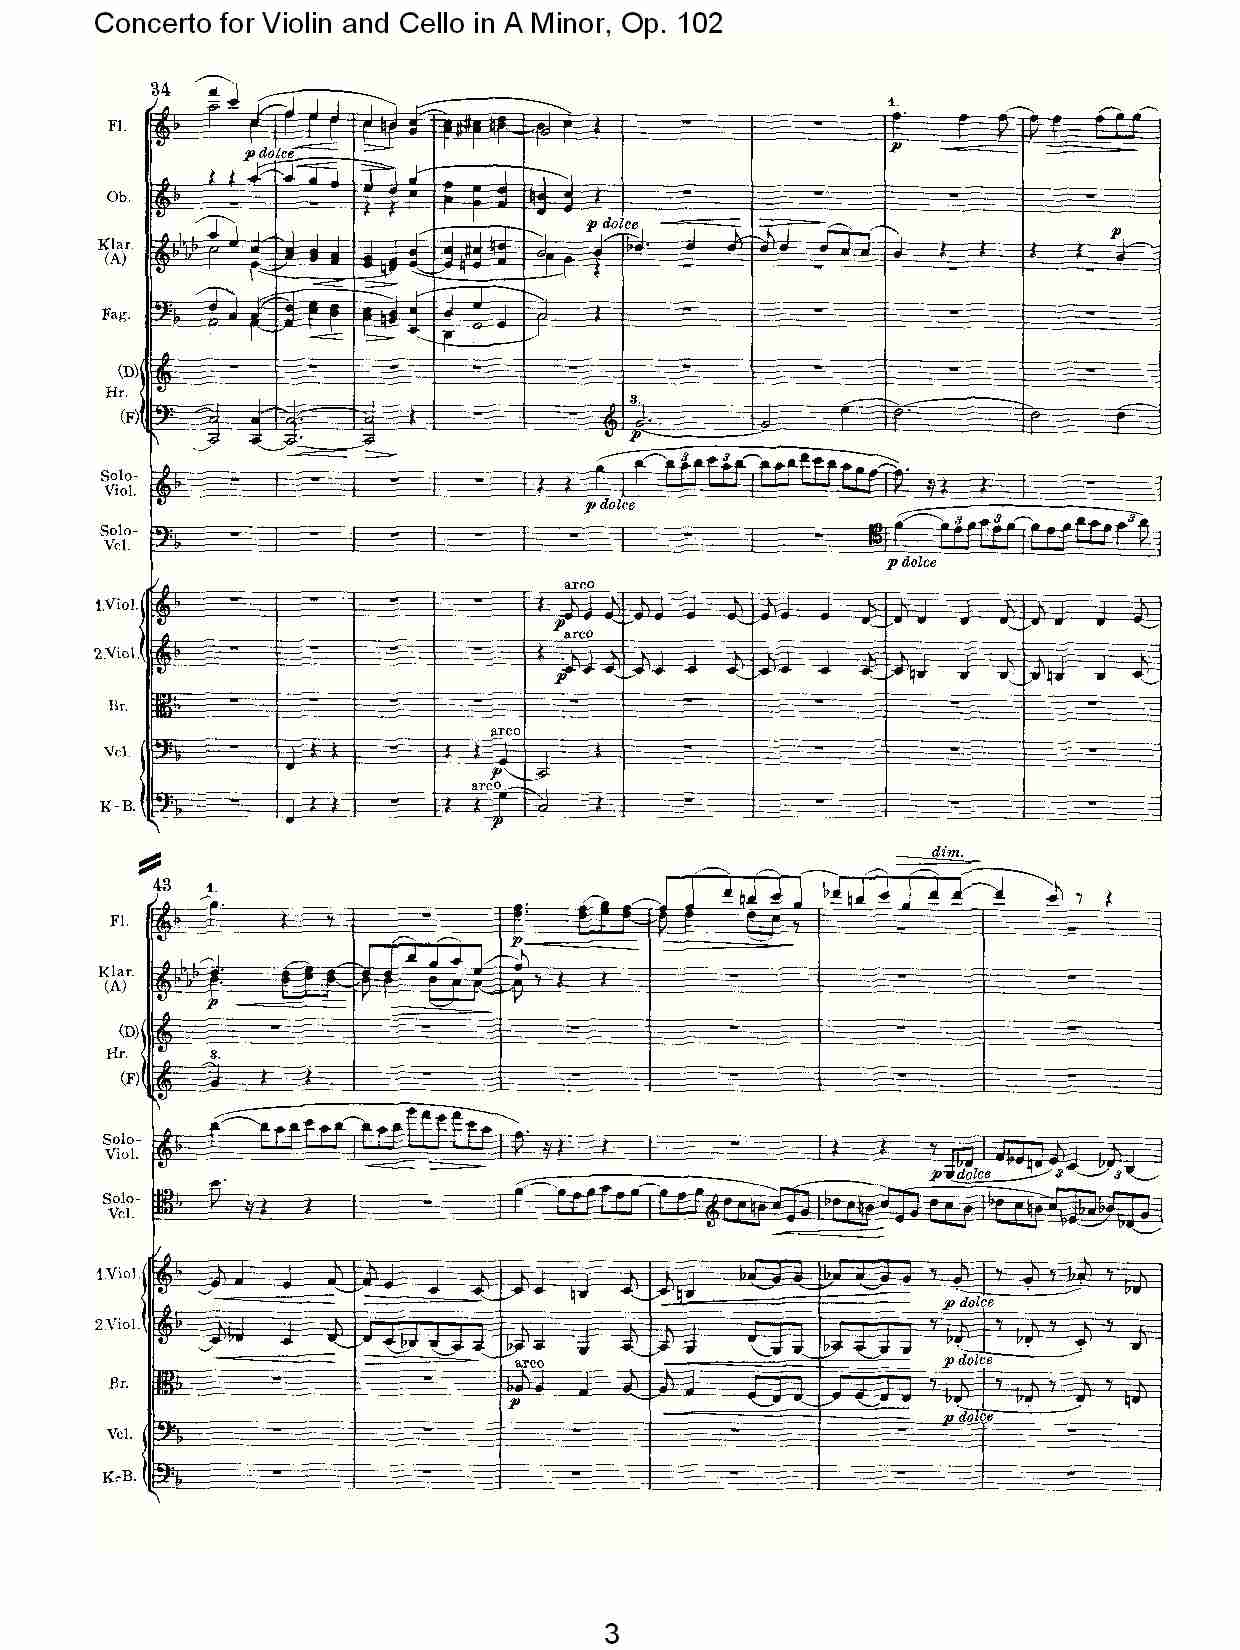 A小调小提琴与大提琴协奏曲, Op.102第二乐章（一）总谱（图3）